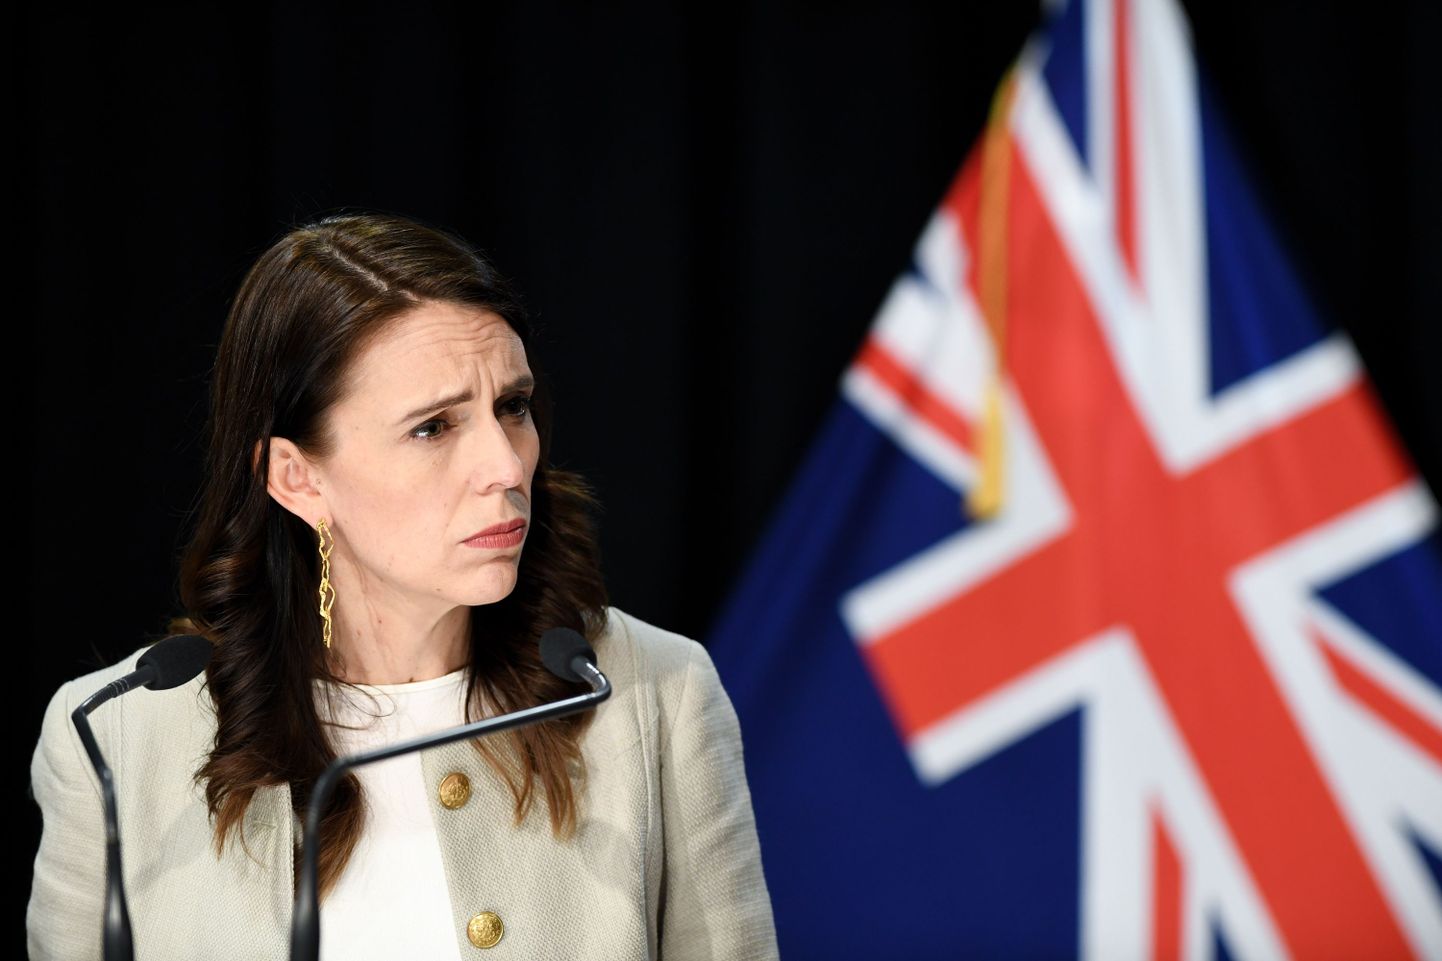 Uus-Meremaa peaminister Jacinda Ardern tunneb muret riigis tekkinud uue koroonakolde pärast. Ligi 100 päeva kestnud uute koroonajuhtumiteta aeg sai läbi. Aucklandis kehtestatakse taas karmimad liikumis- ja tegutsemipiirangud. Pressikonverents Wellingtonis, Uus-Meremaal 14. augustil 2020.